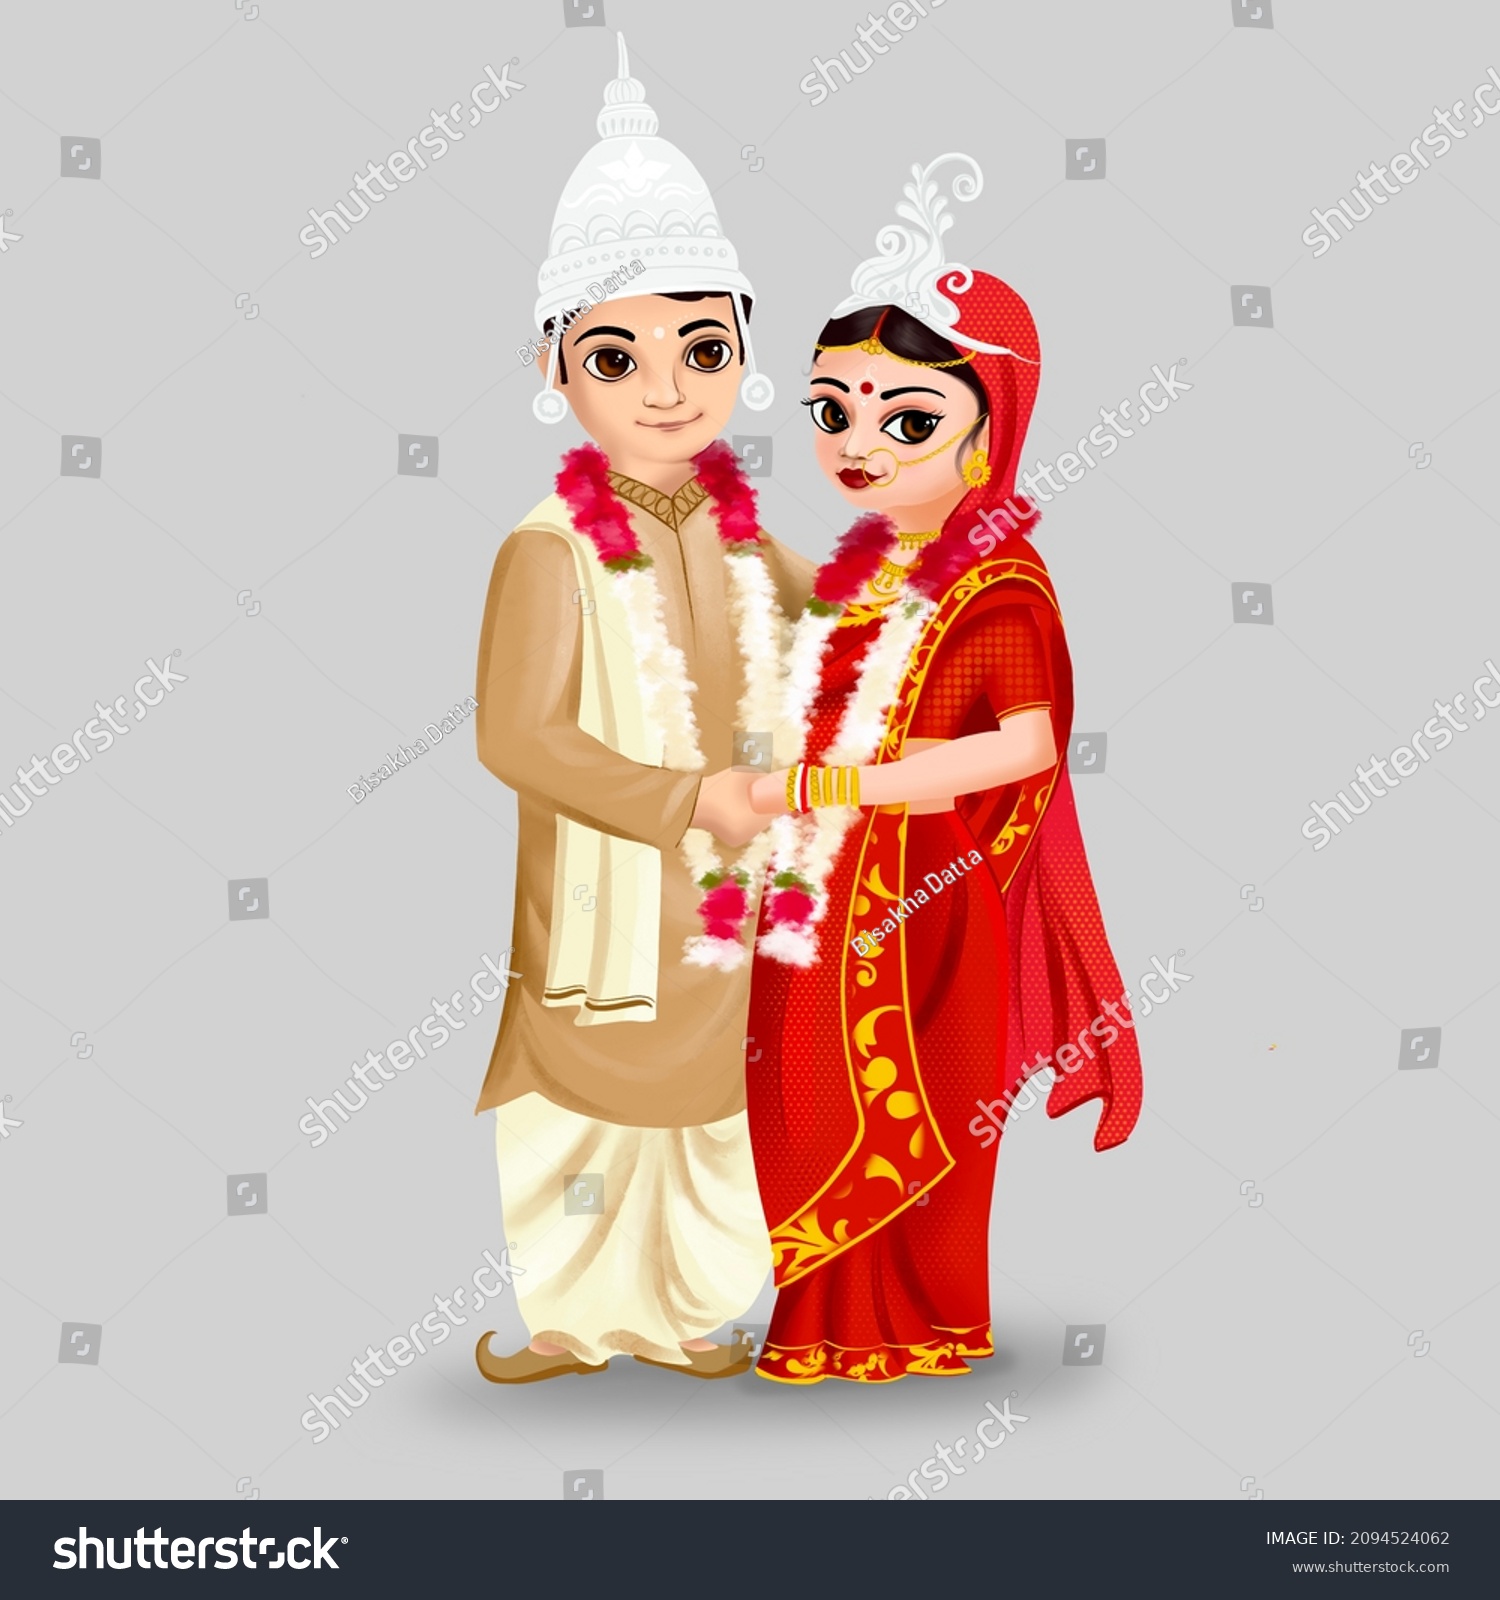 Bengali wife Images, Stock Photos & Vectors Shutterstock